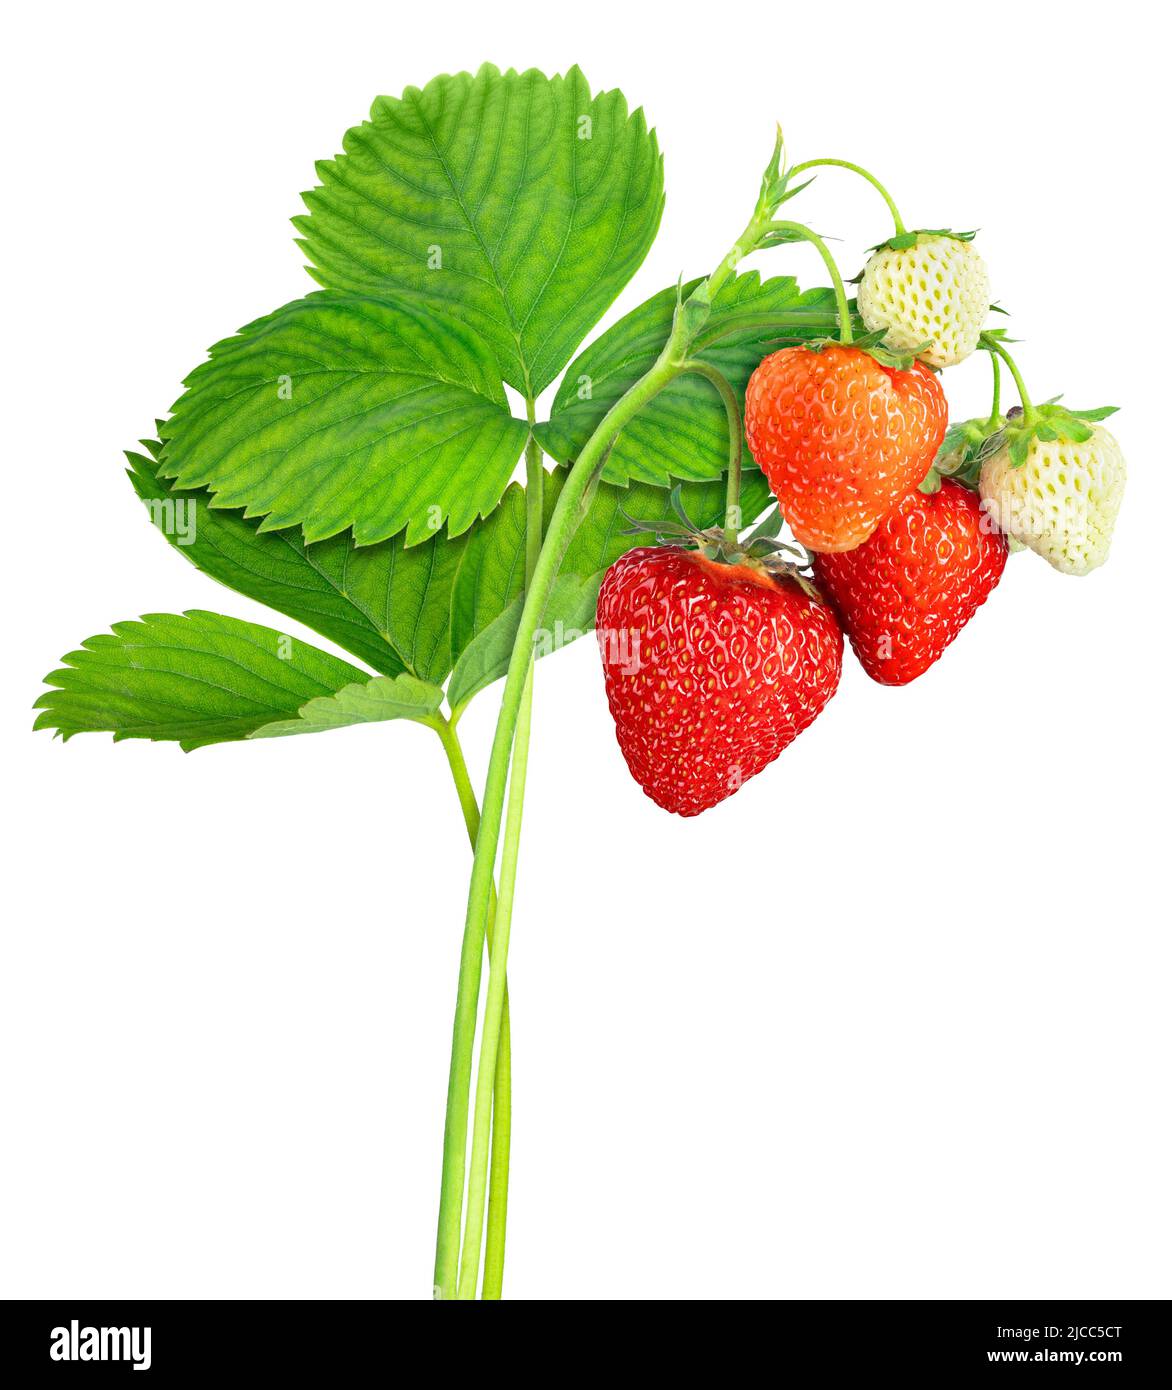 plante de fraise avec feuilles, baies mûres et non mûres isolées sur blanc Banque D'Images